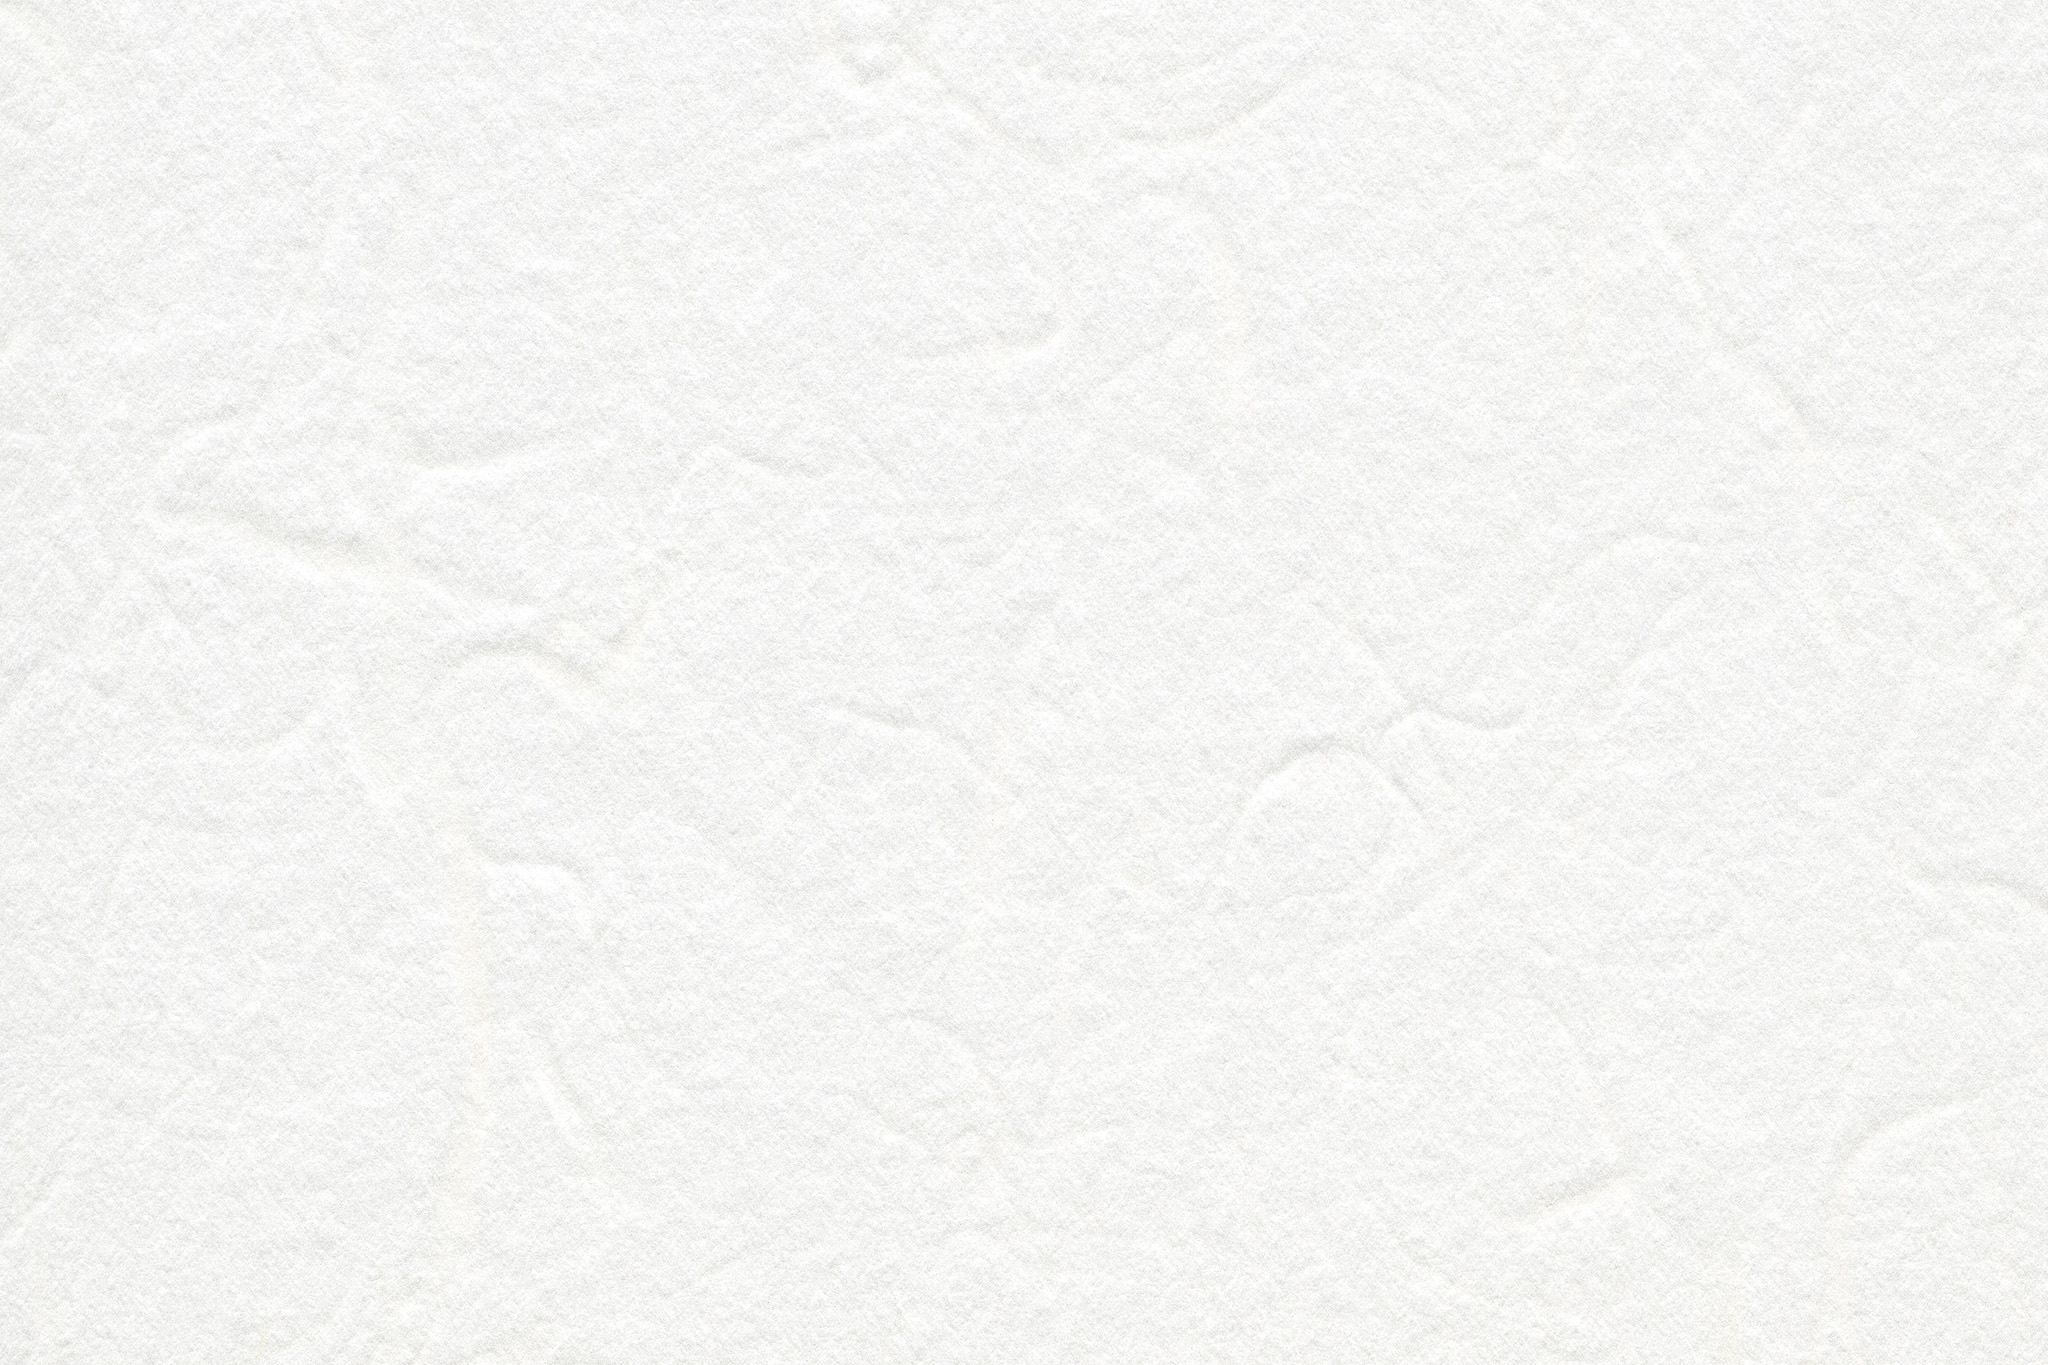 白色筋のテクスチャがある和紙 のテクスチャ素材を無料ダウンロード 1 背景フリー素材 Beiz Images